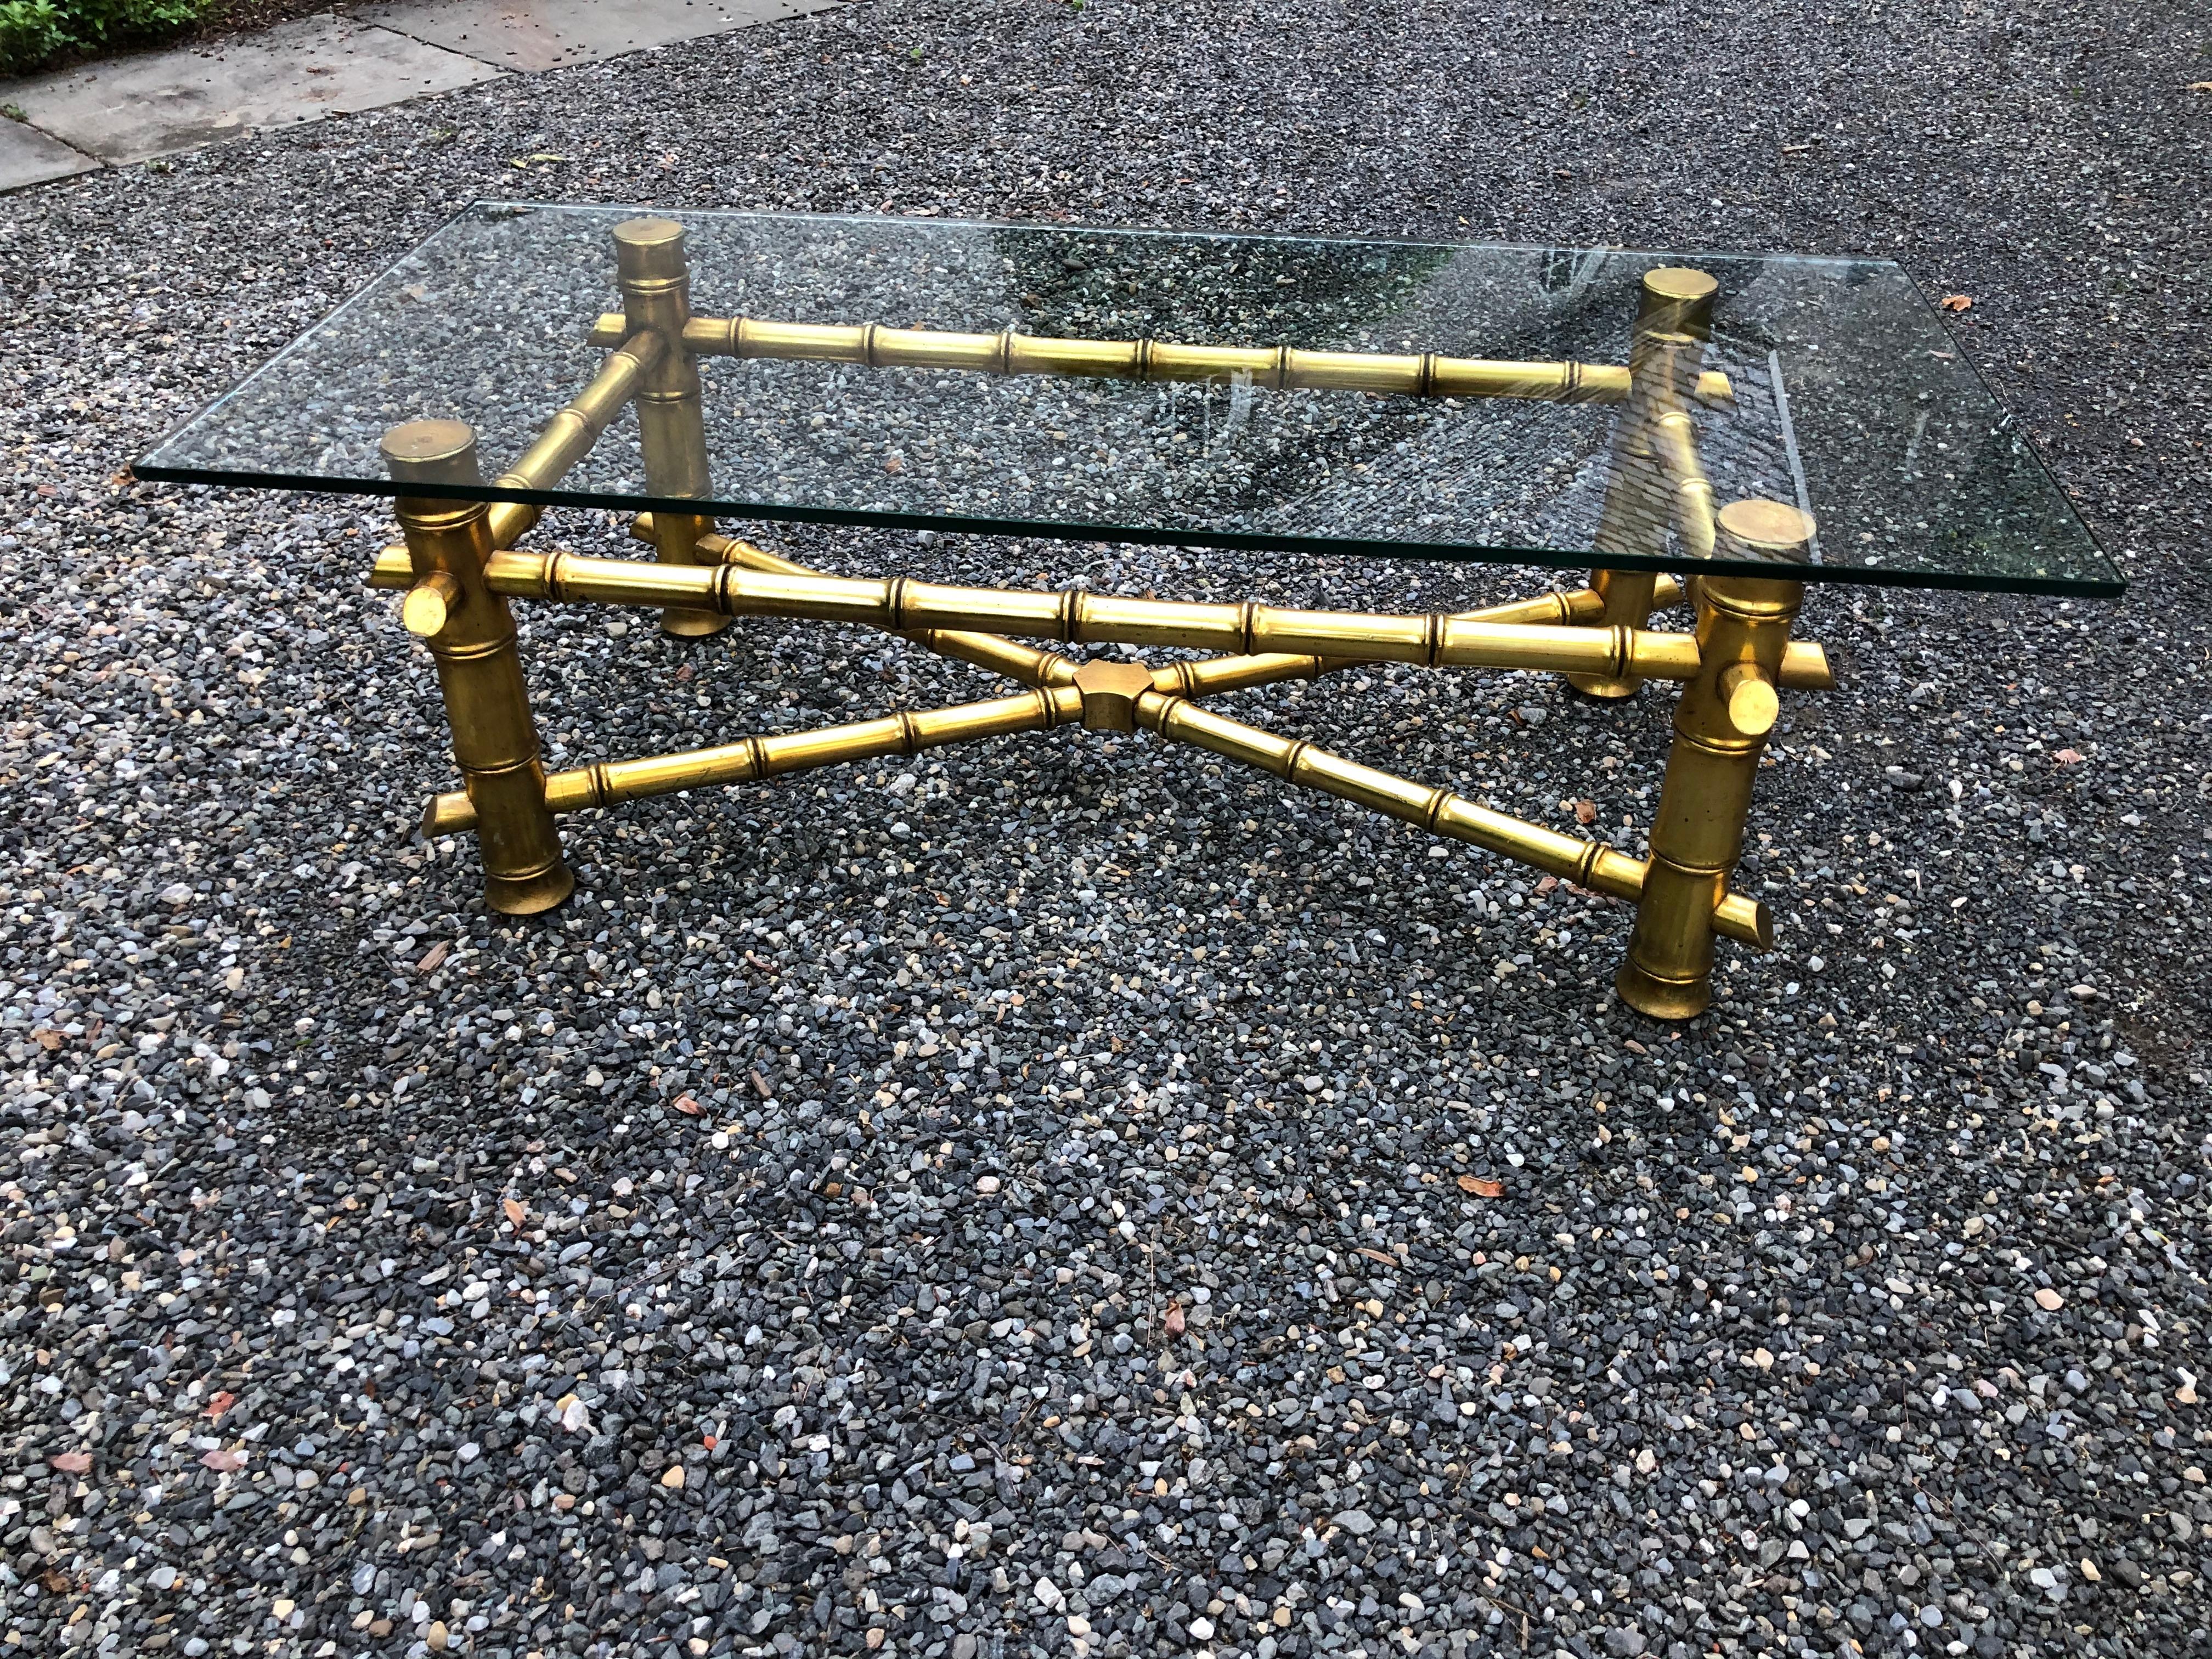 Table de cocktail sophistiquée en faux bambou avec feuille de métal dorée sur bois. Le morceau de verre n'est pas attaché et mesure 1/4